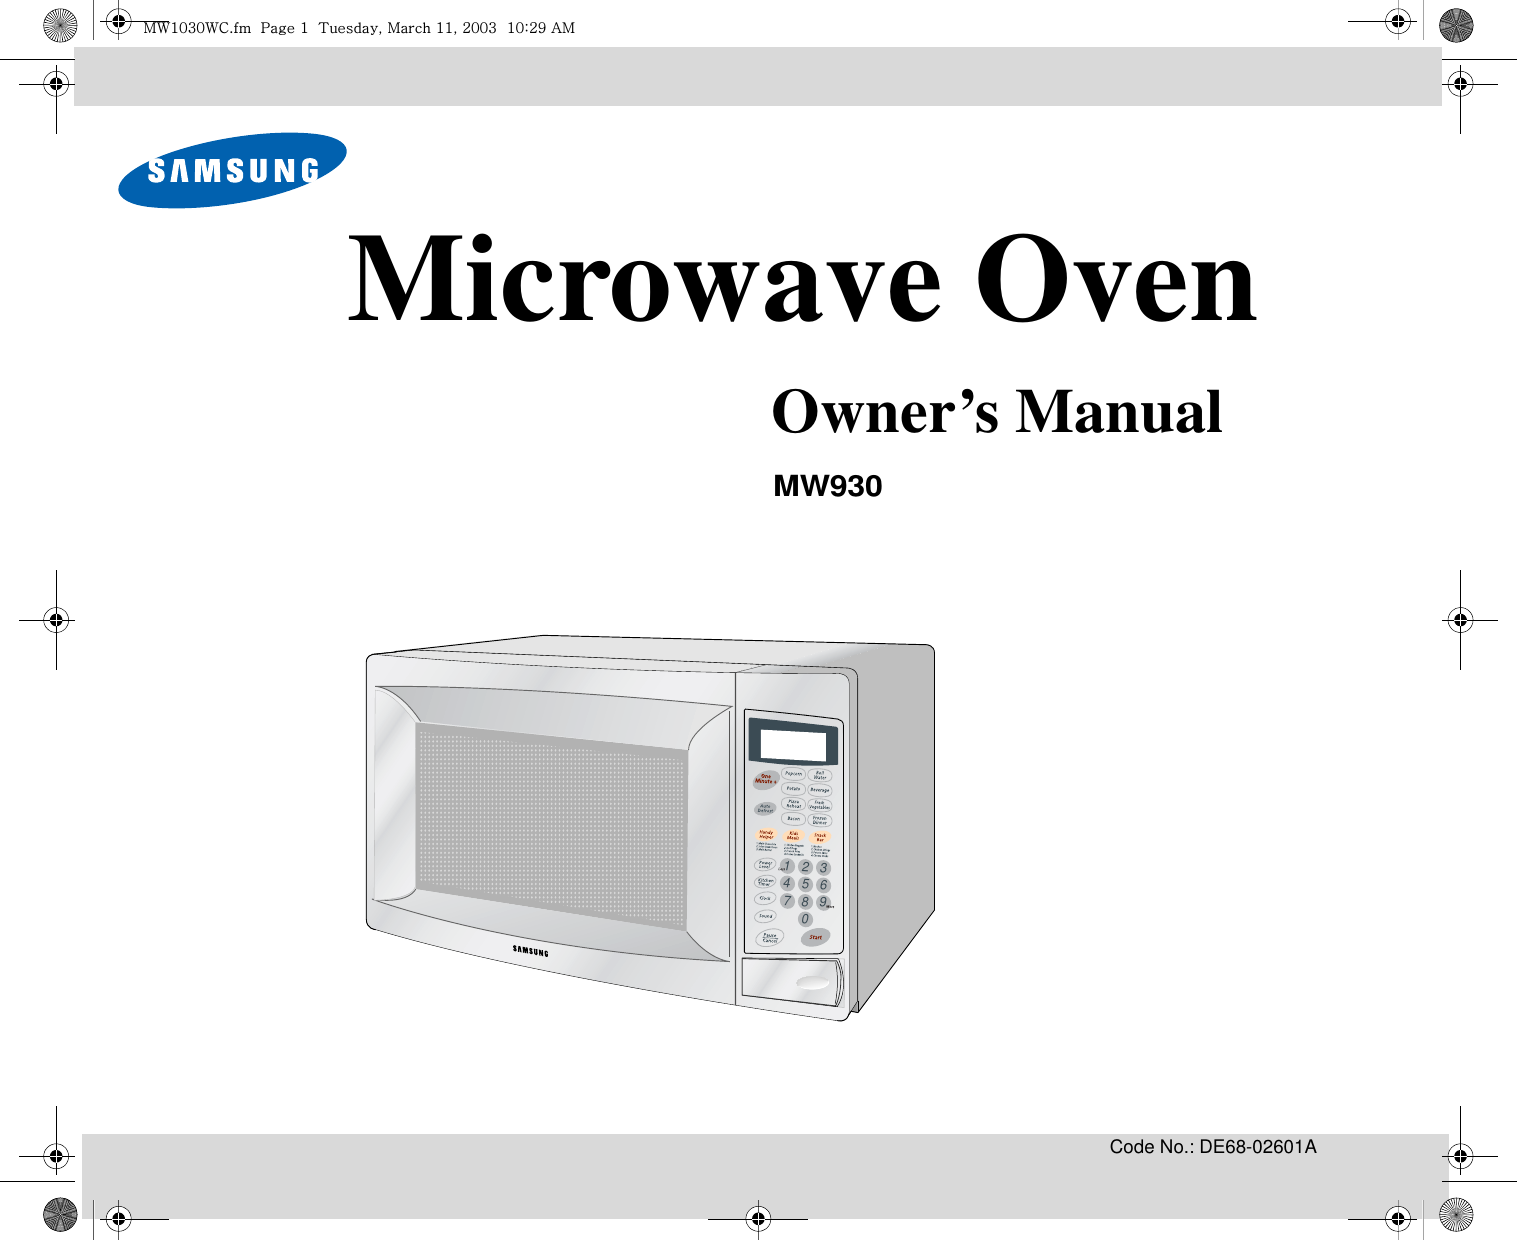 Code No.: DE68-02601A3216549870Microwave OvenOwner’s ManualMW930t~XWZW~jUGGwGXGG{SGtGXXSGYWWZGGXWaY`Ght